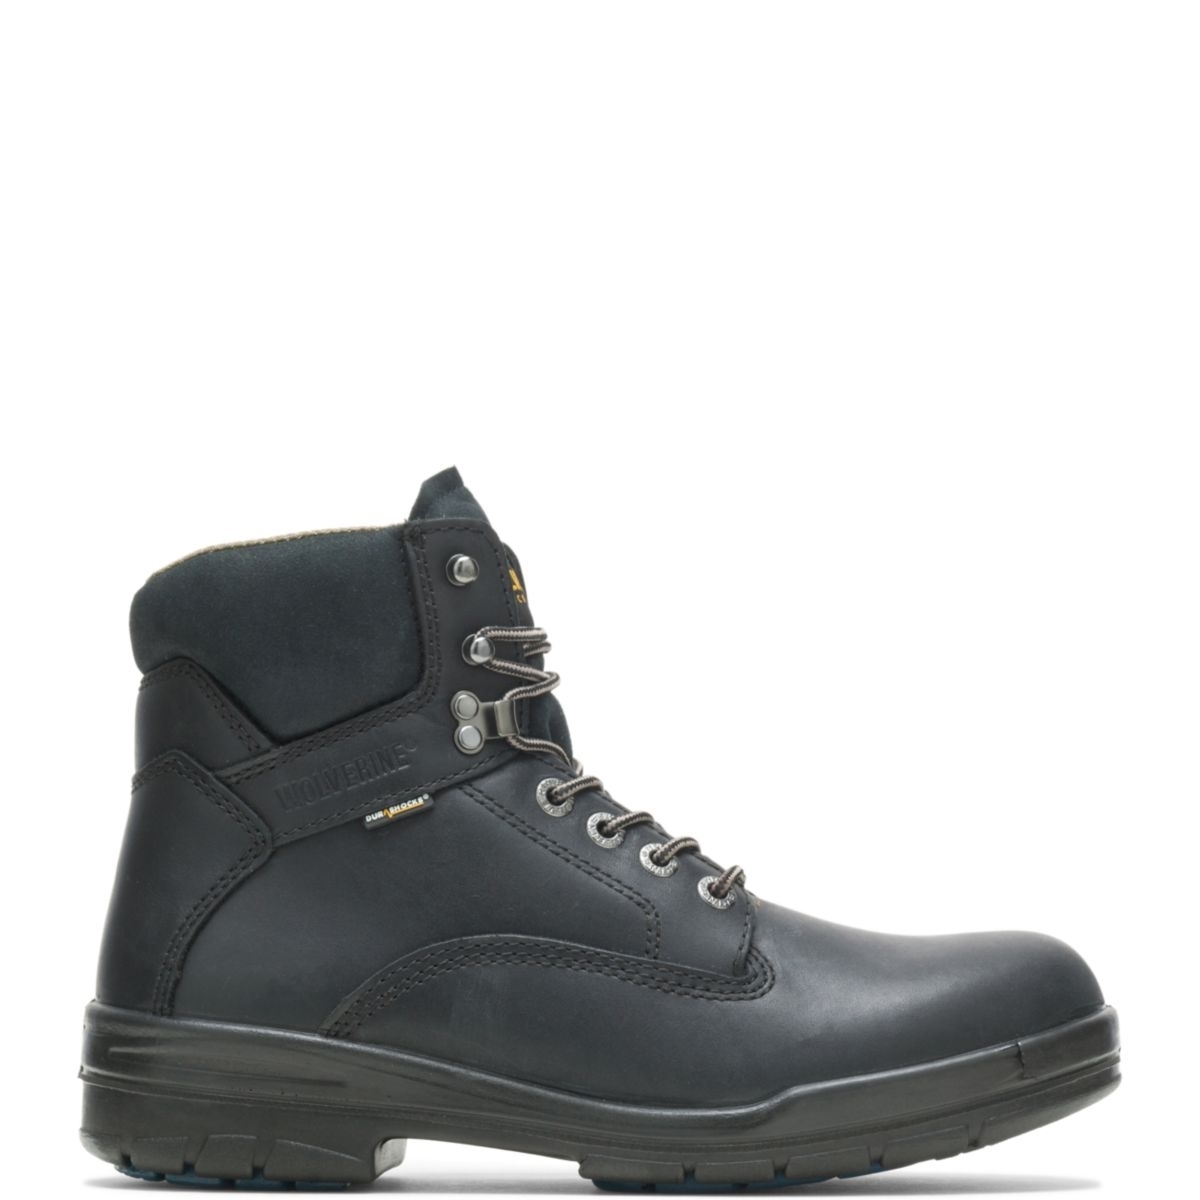 WOLVERINE Men's 6 DuraShocksÂ® Slip Resistant Direct-Attached Lined Soft Toe Work Boot Black - W03123 14 WIDE BLACK - BLACK, 8